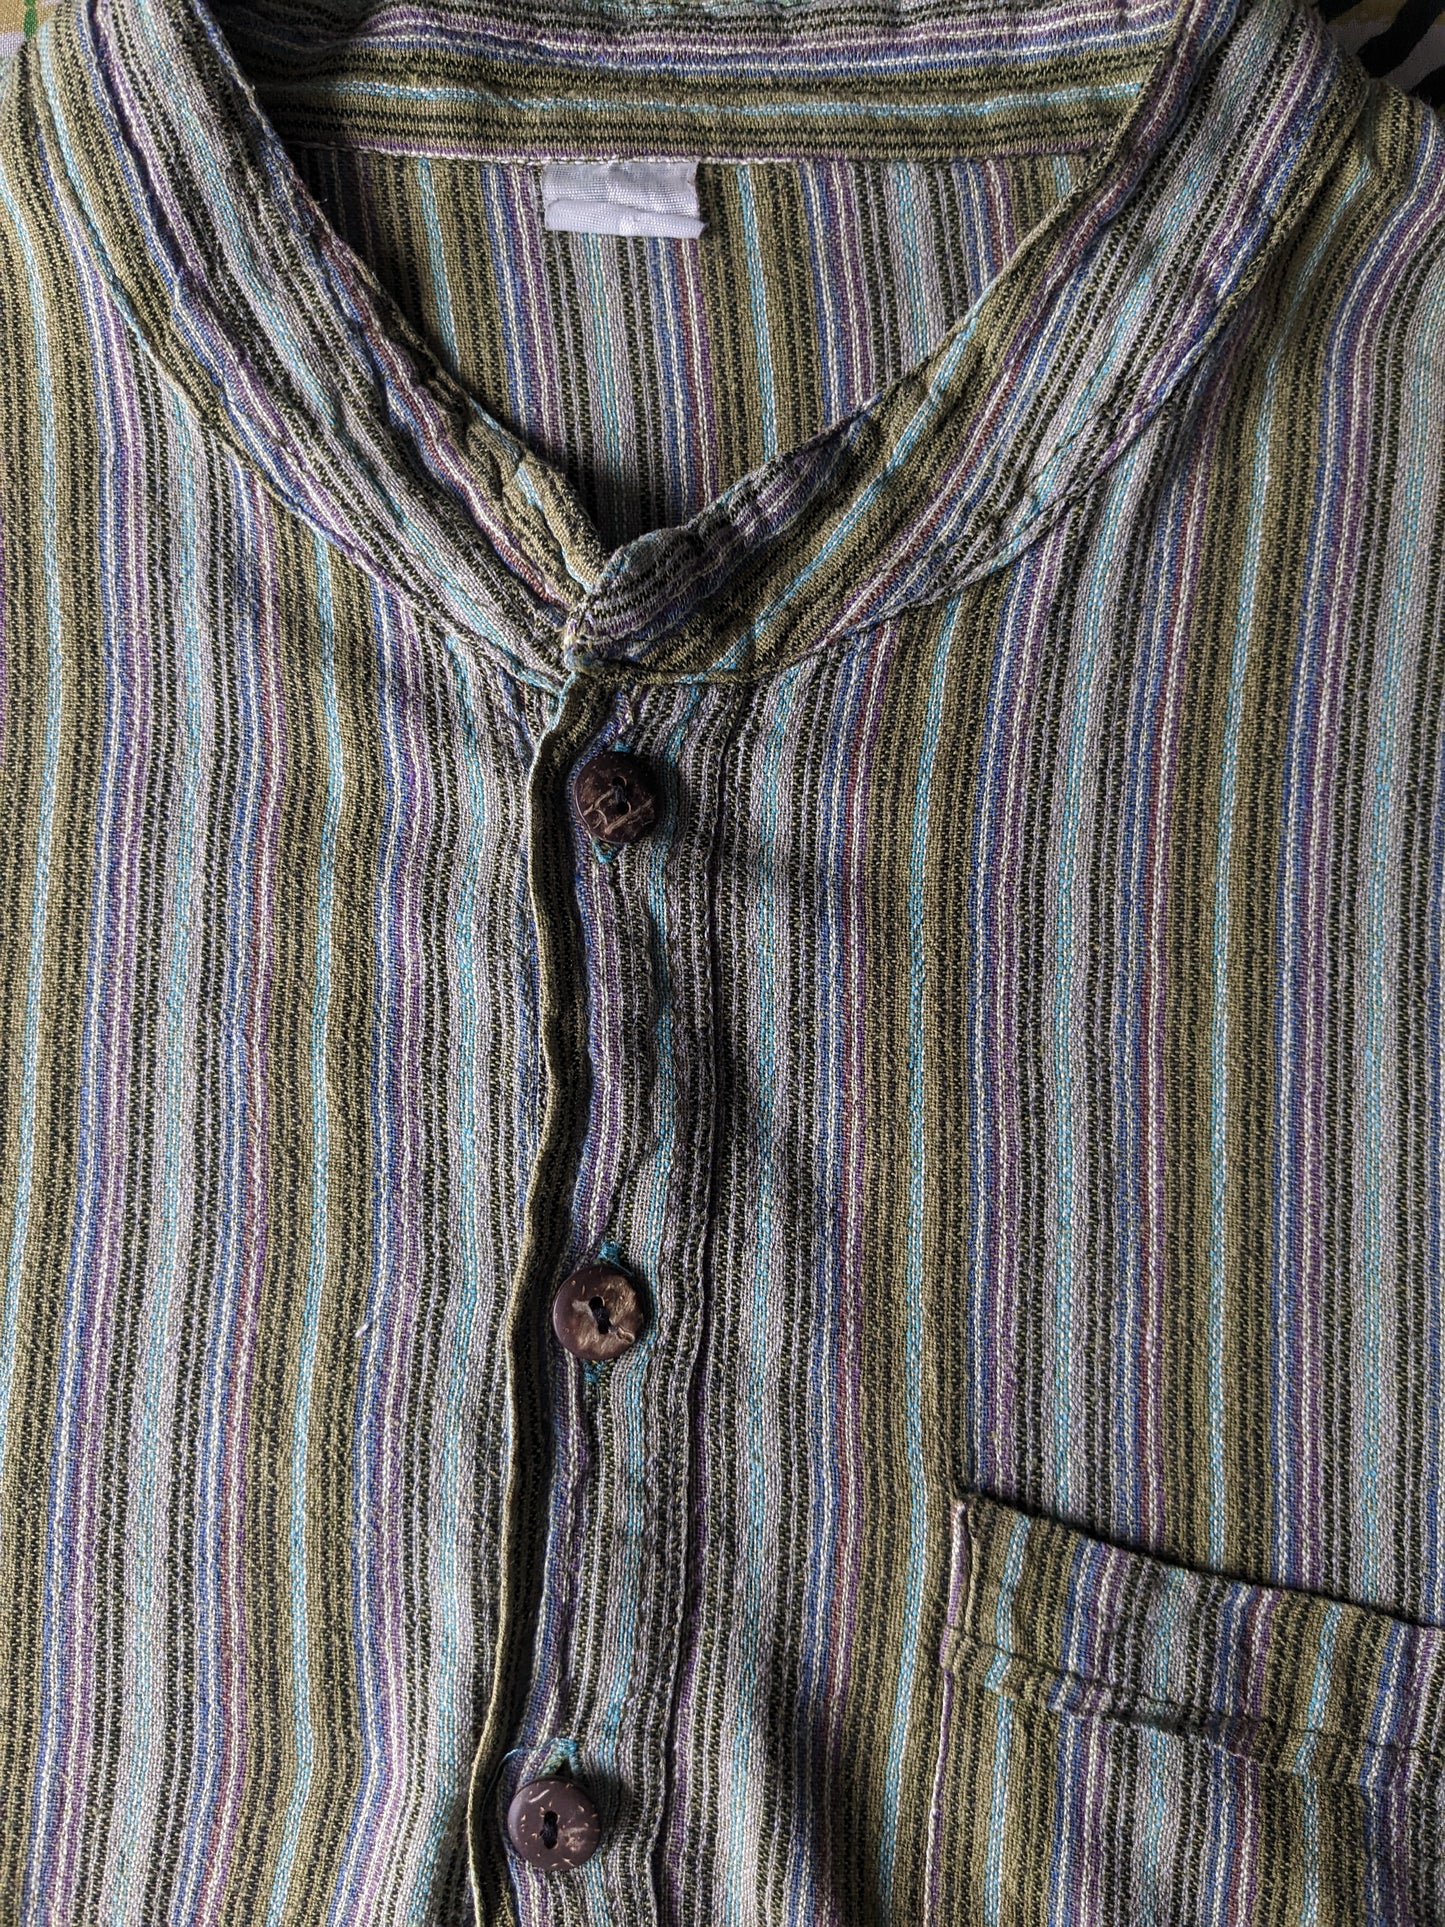 Pull / chemise de polo vintage avec collier surélevé / agriculteurs / mao. Green violet brun bleu rayé avec sac. Taille xl.